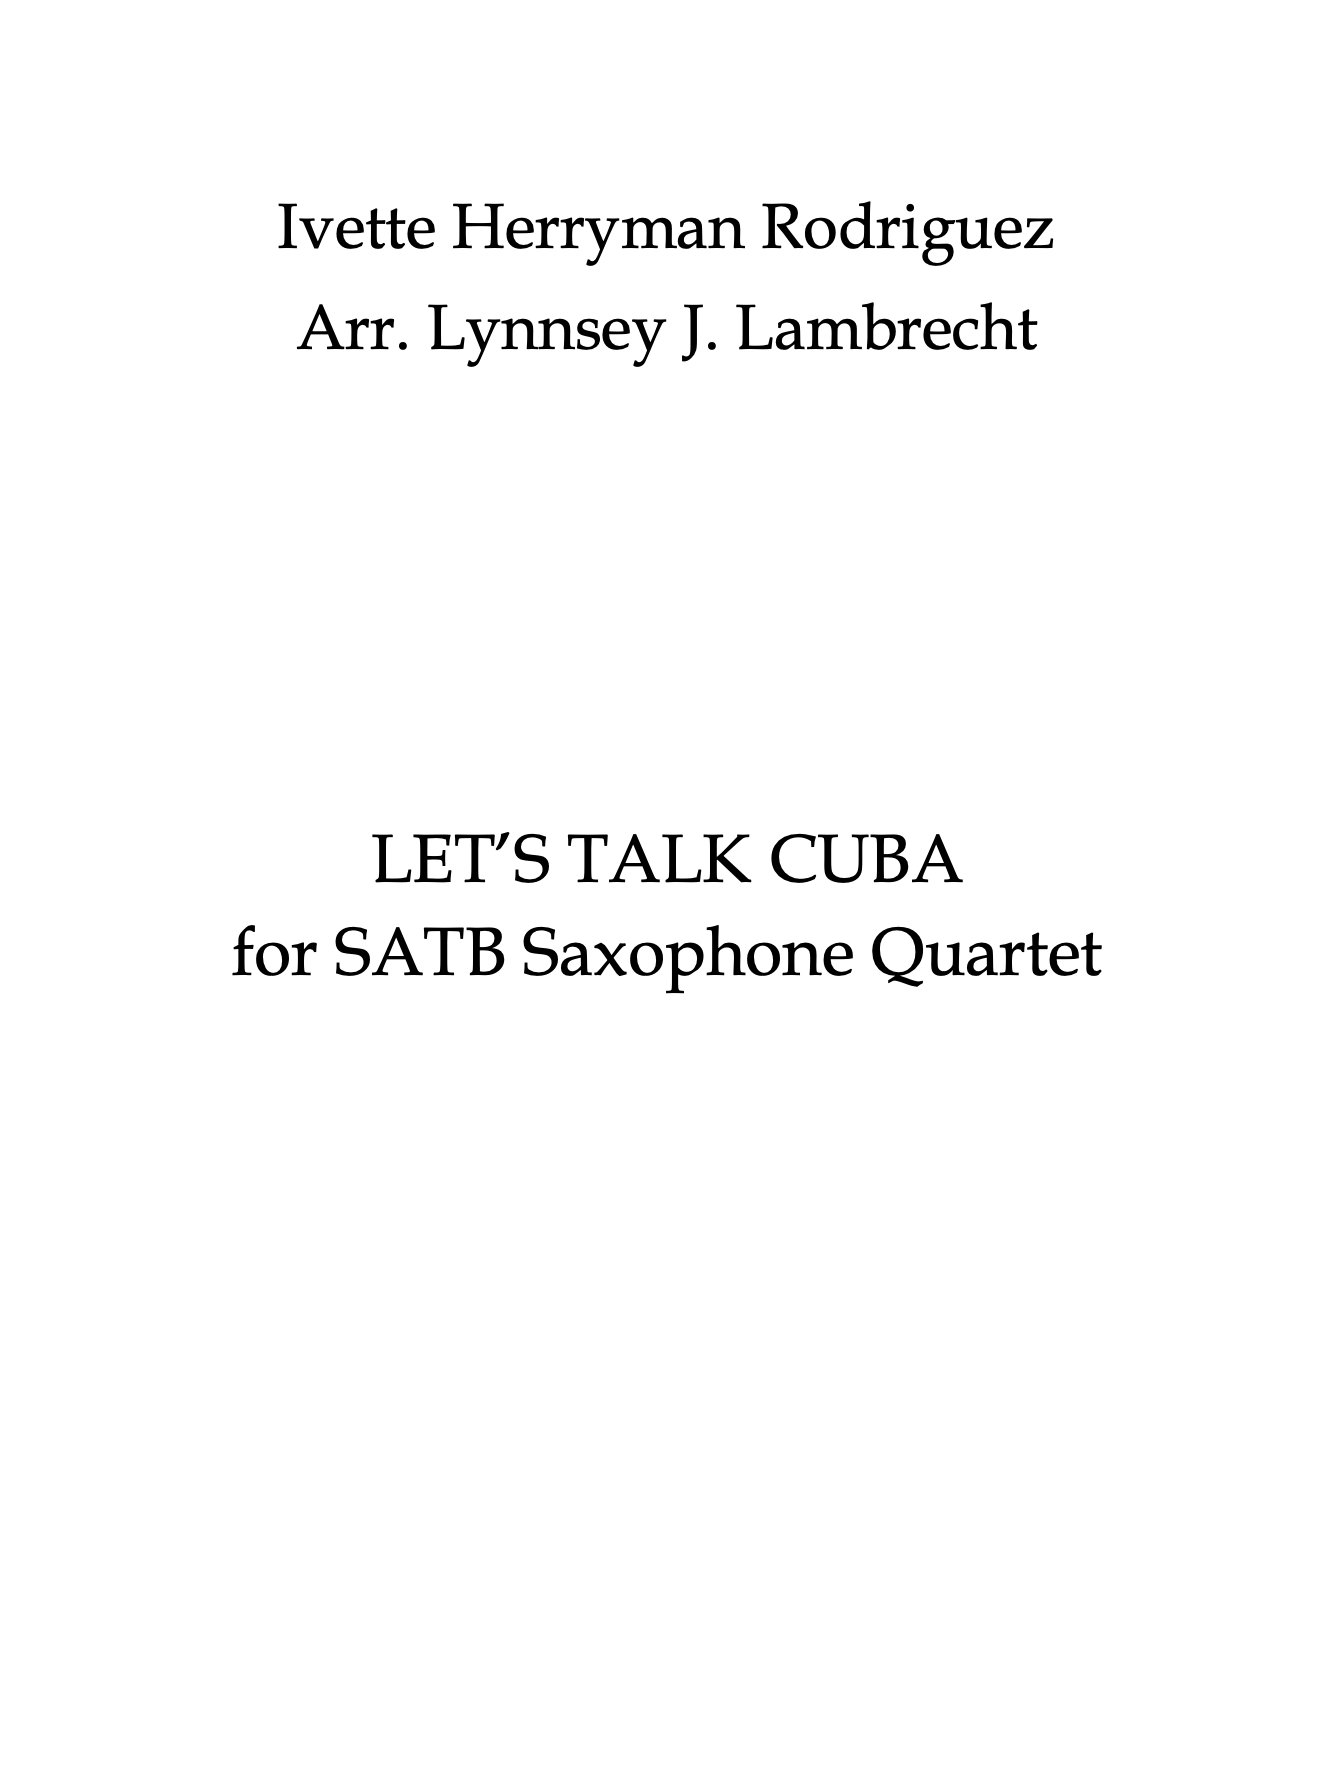 Let's Talk Cuba by Ivette Herryman Rodriguez, arr. Lambrecht